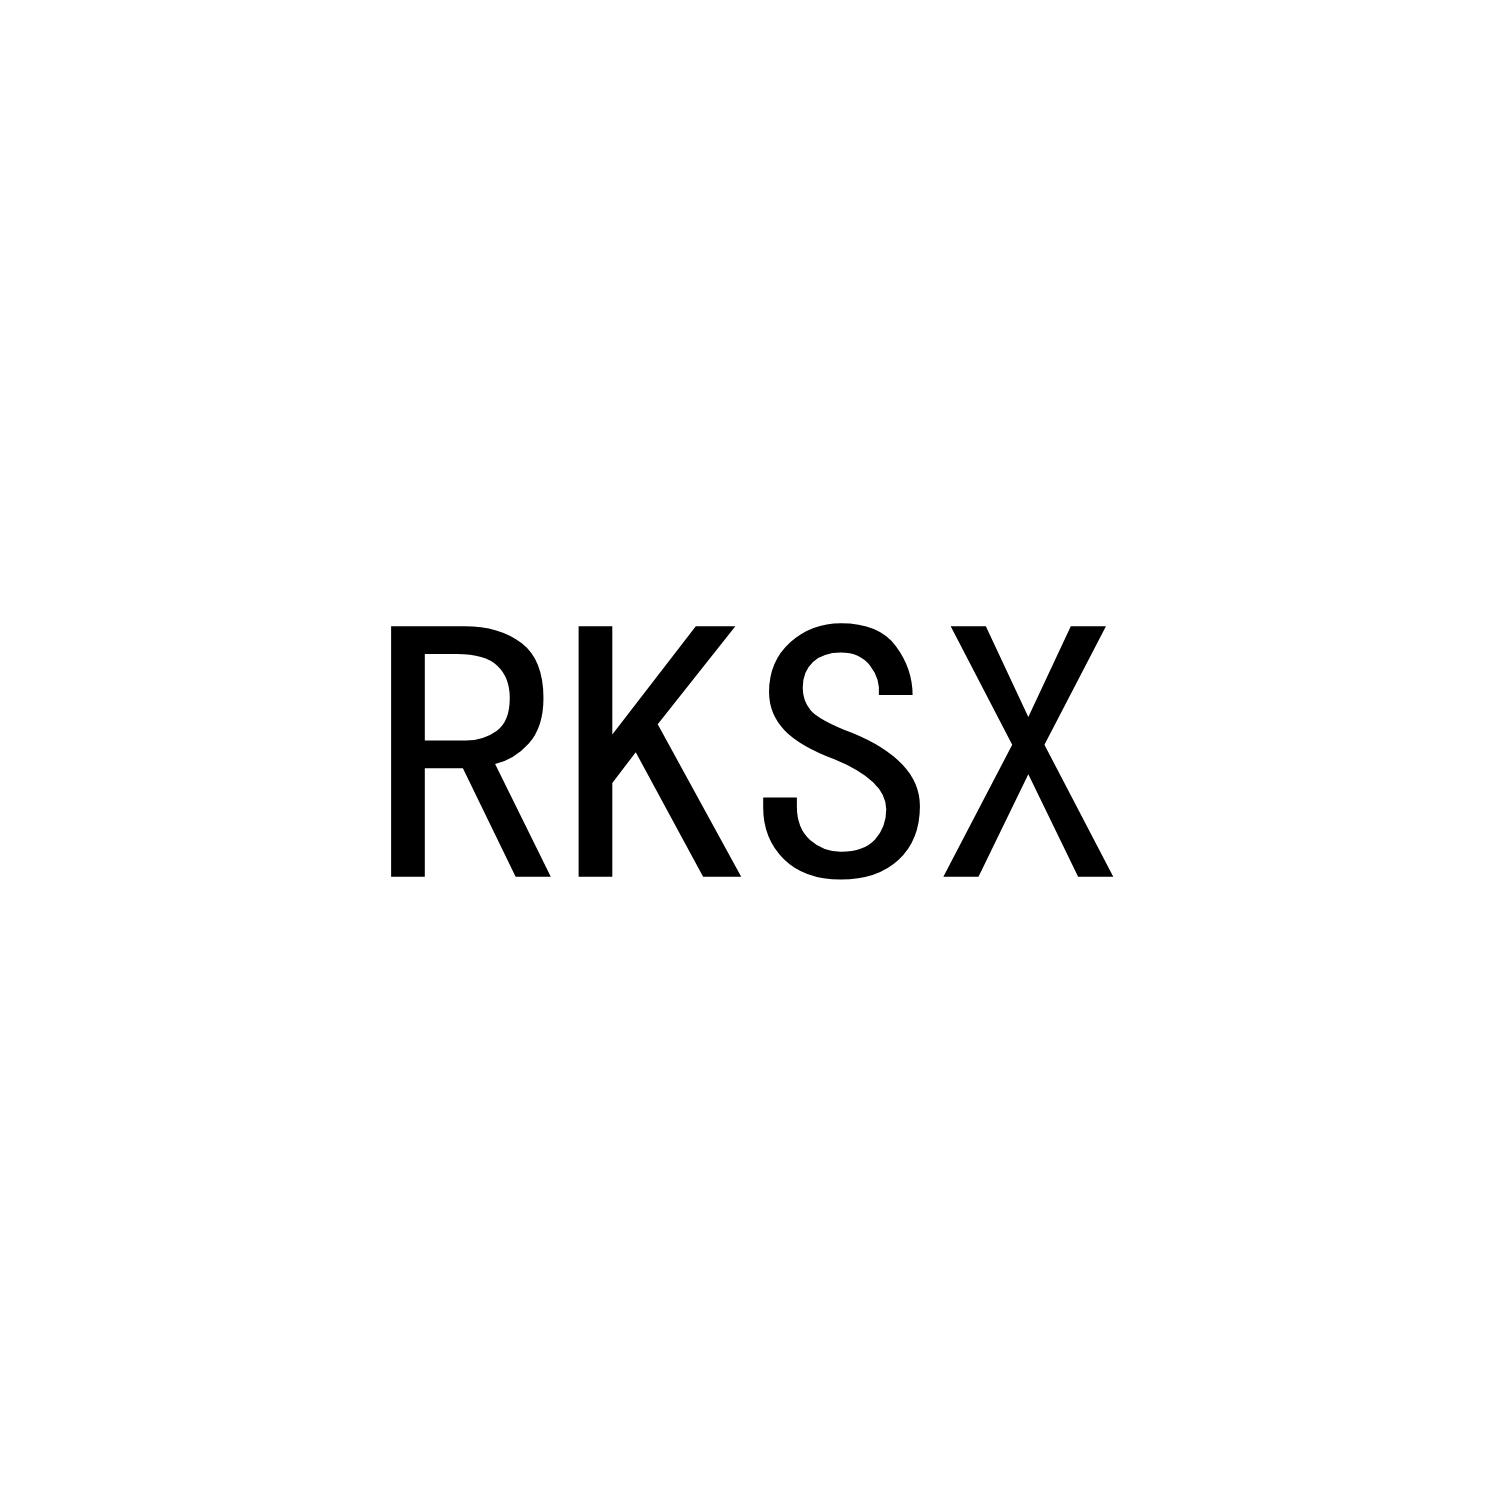 RKSX